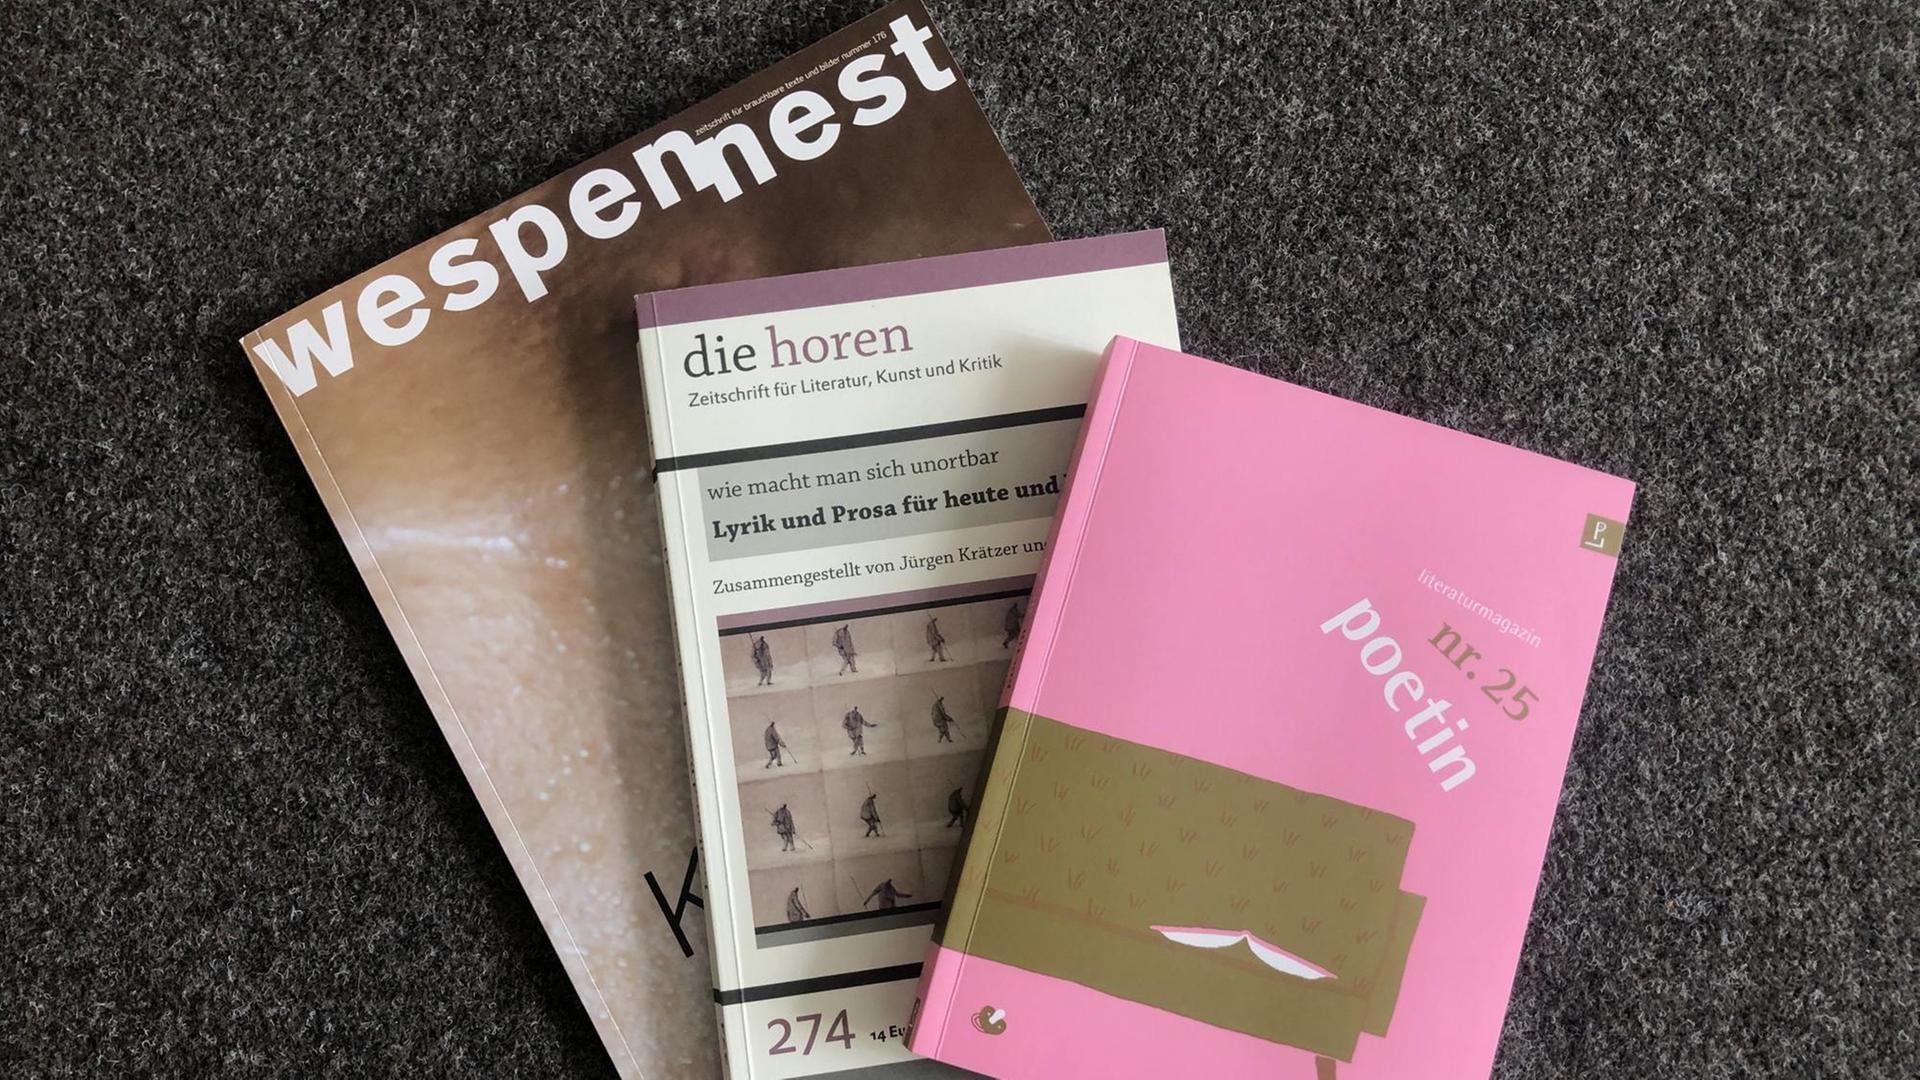 Die Titelbilder der Literaturzeitschriften  "Wespennest", "poetin" und "die horen" liegen übereinander.